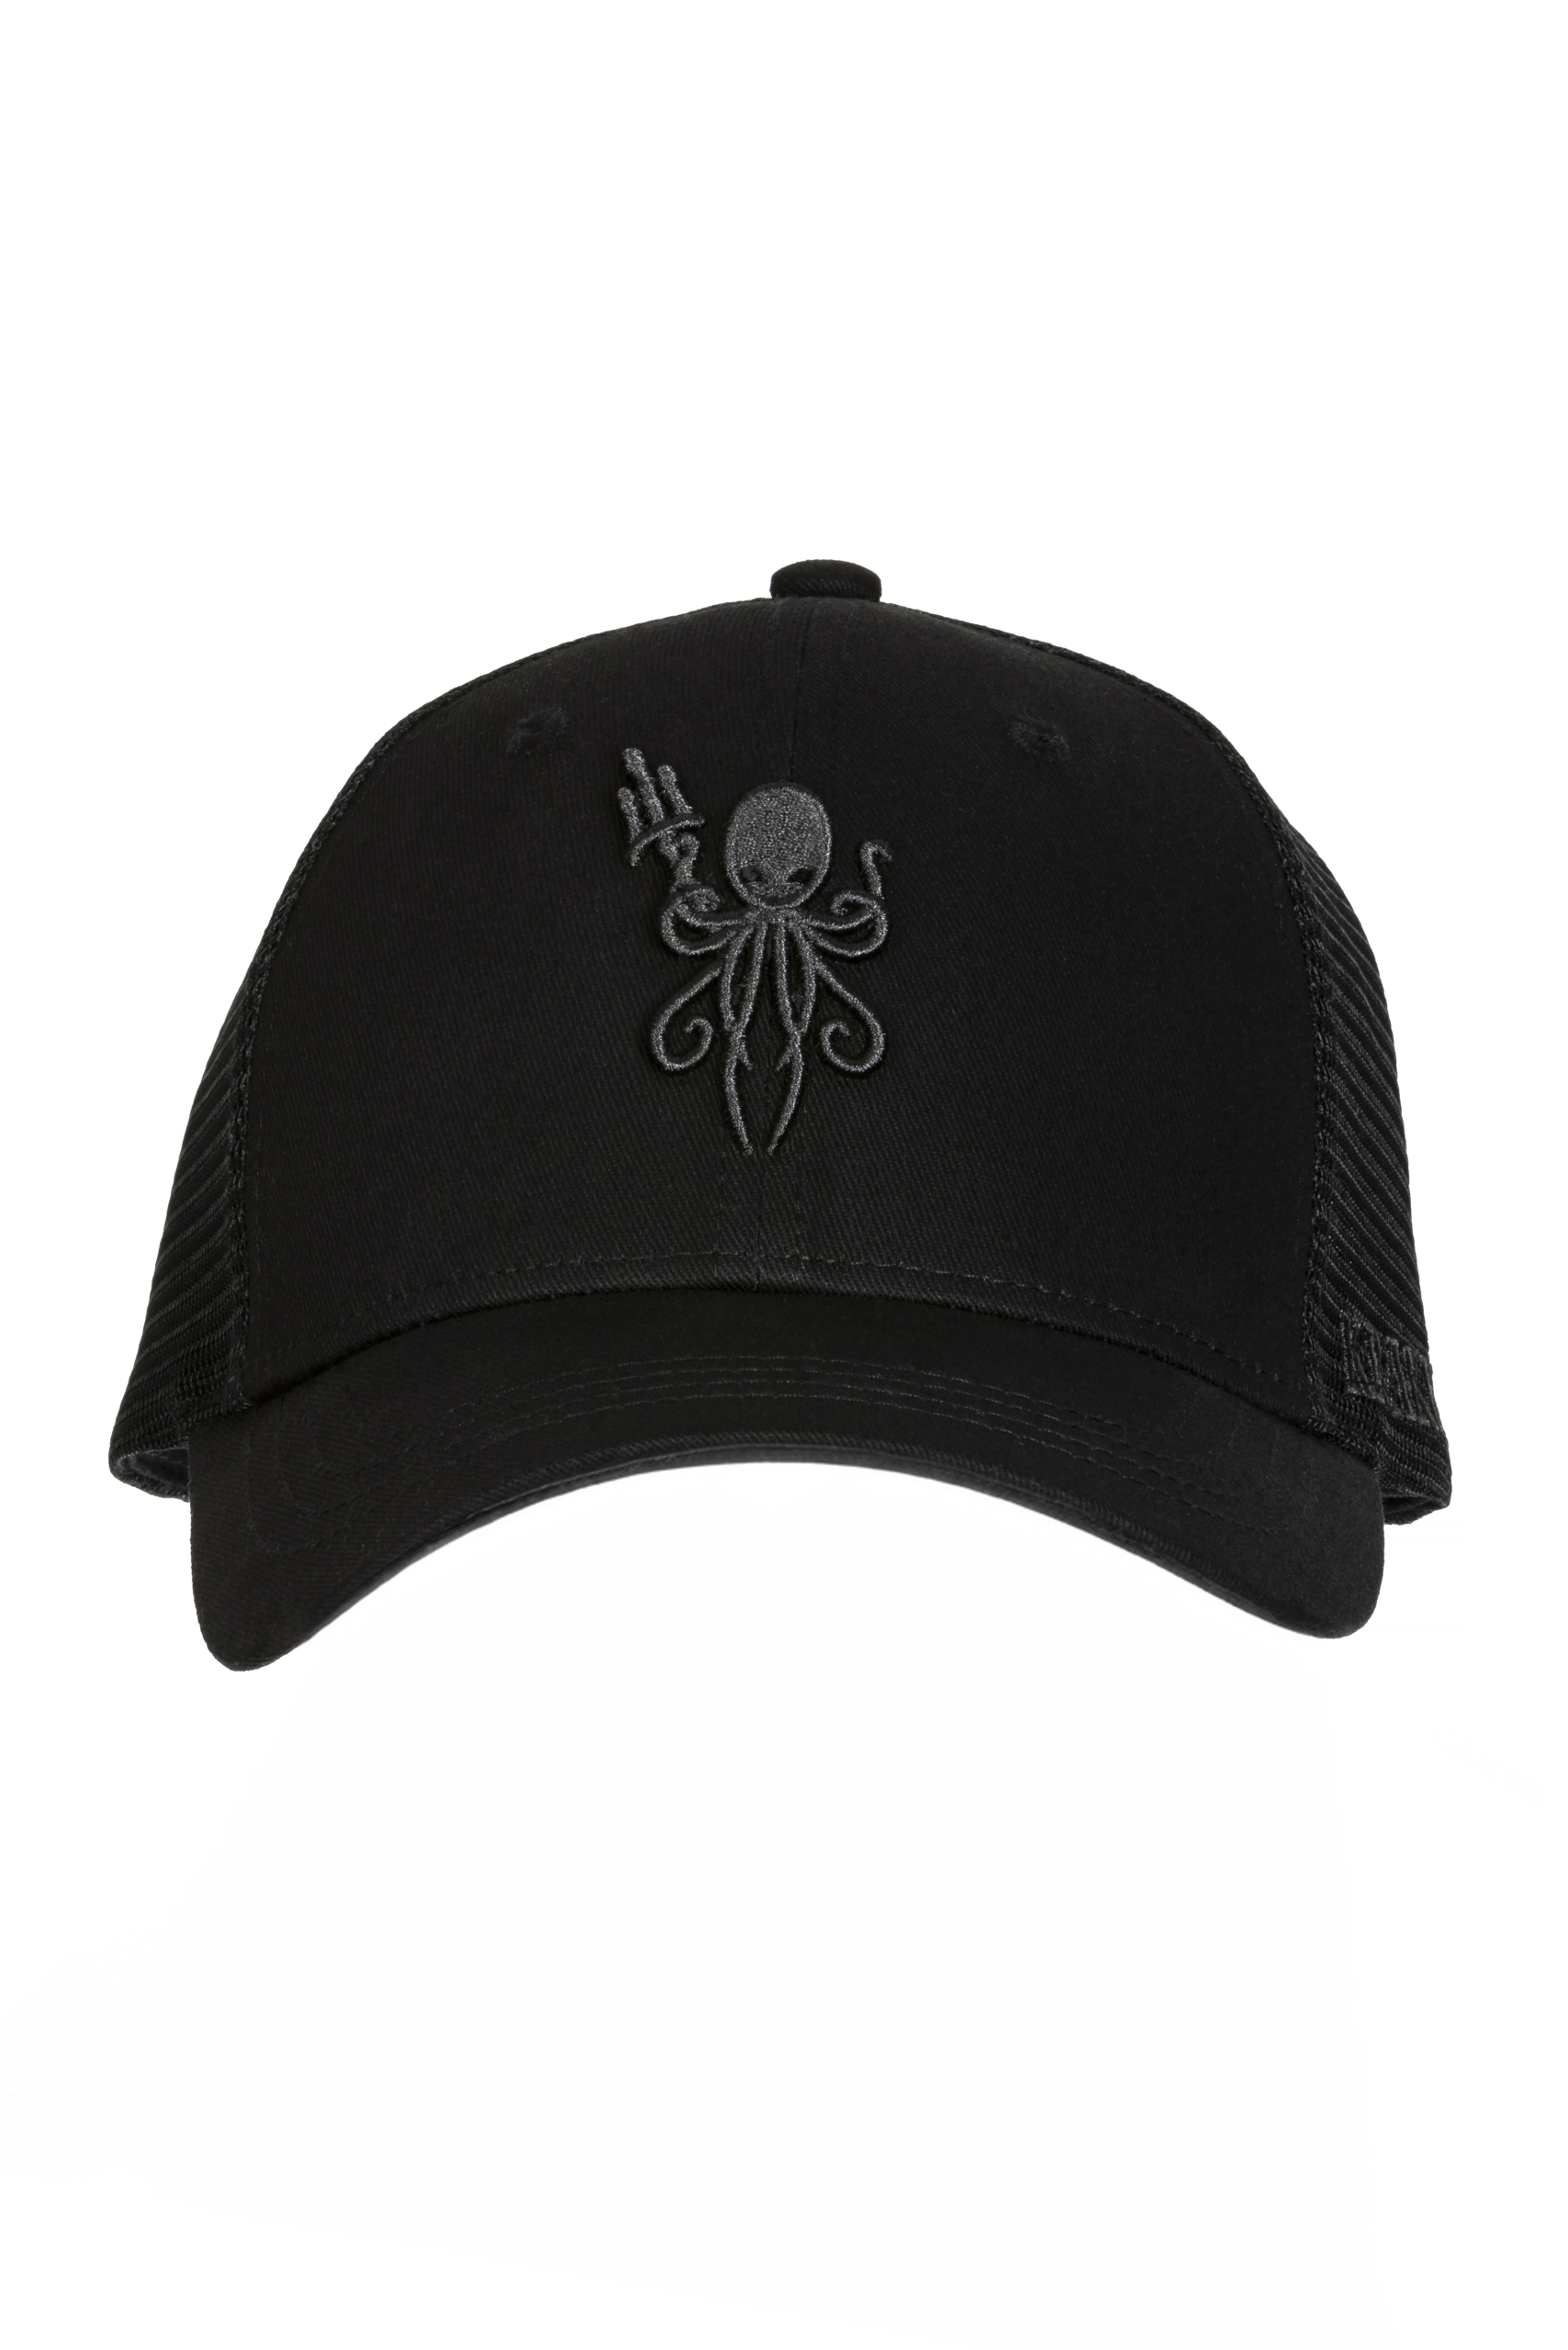 Kraken Sports Black Trucker Hat Black Logo